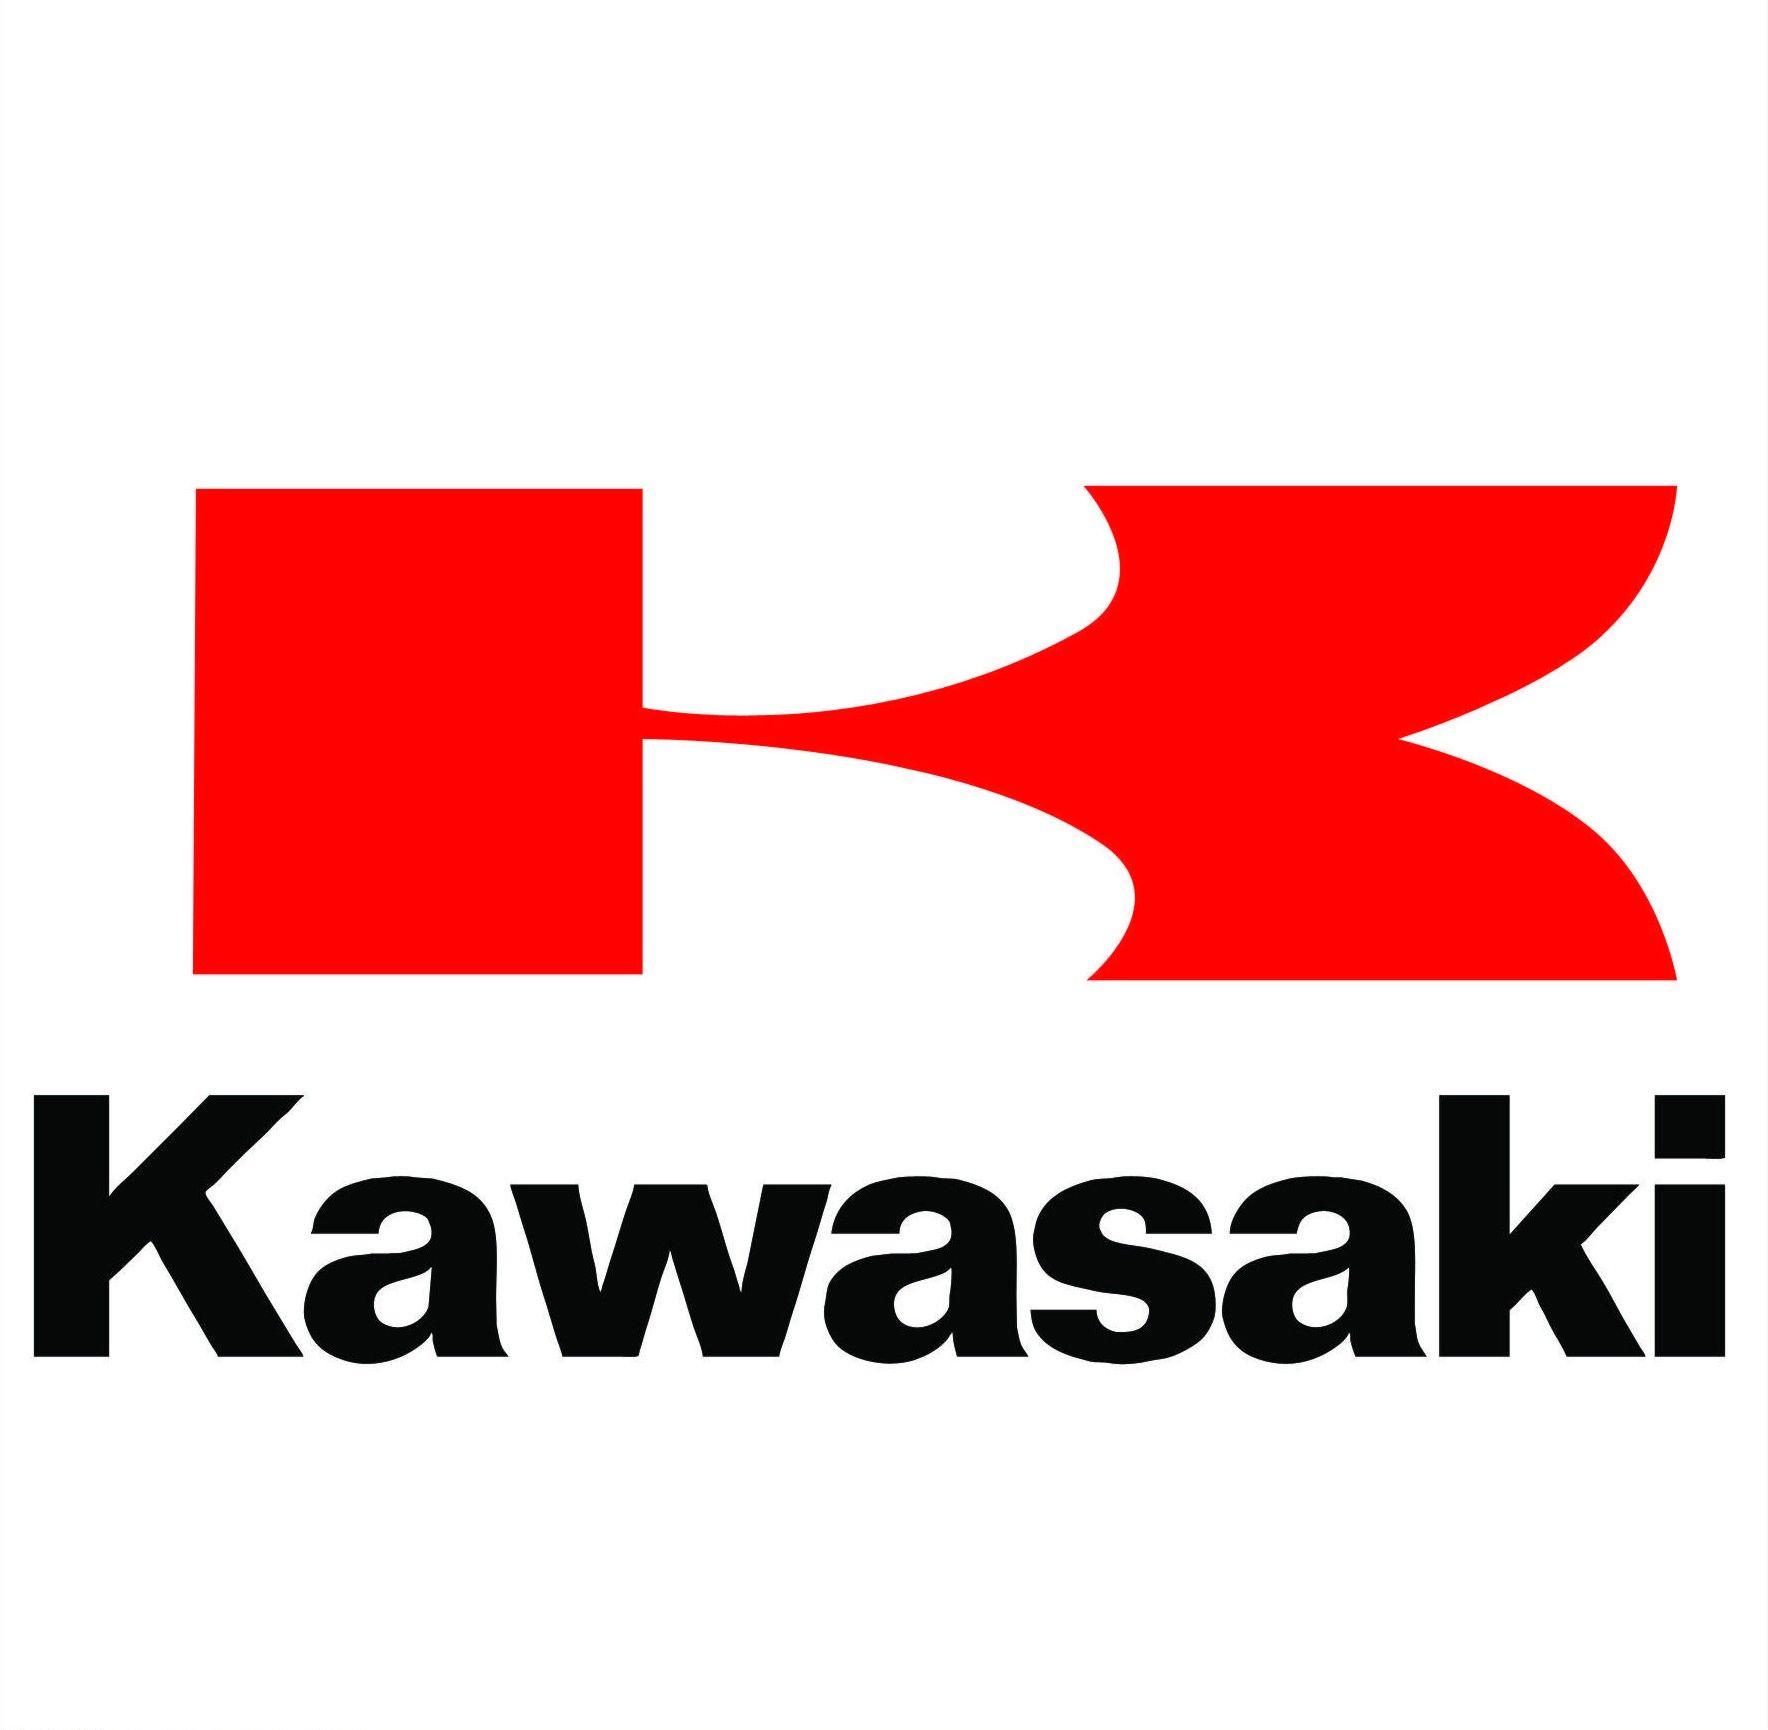 Kawasaki Logo Wallpapers - Wallpaper Cave